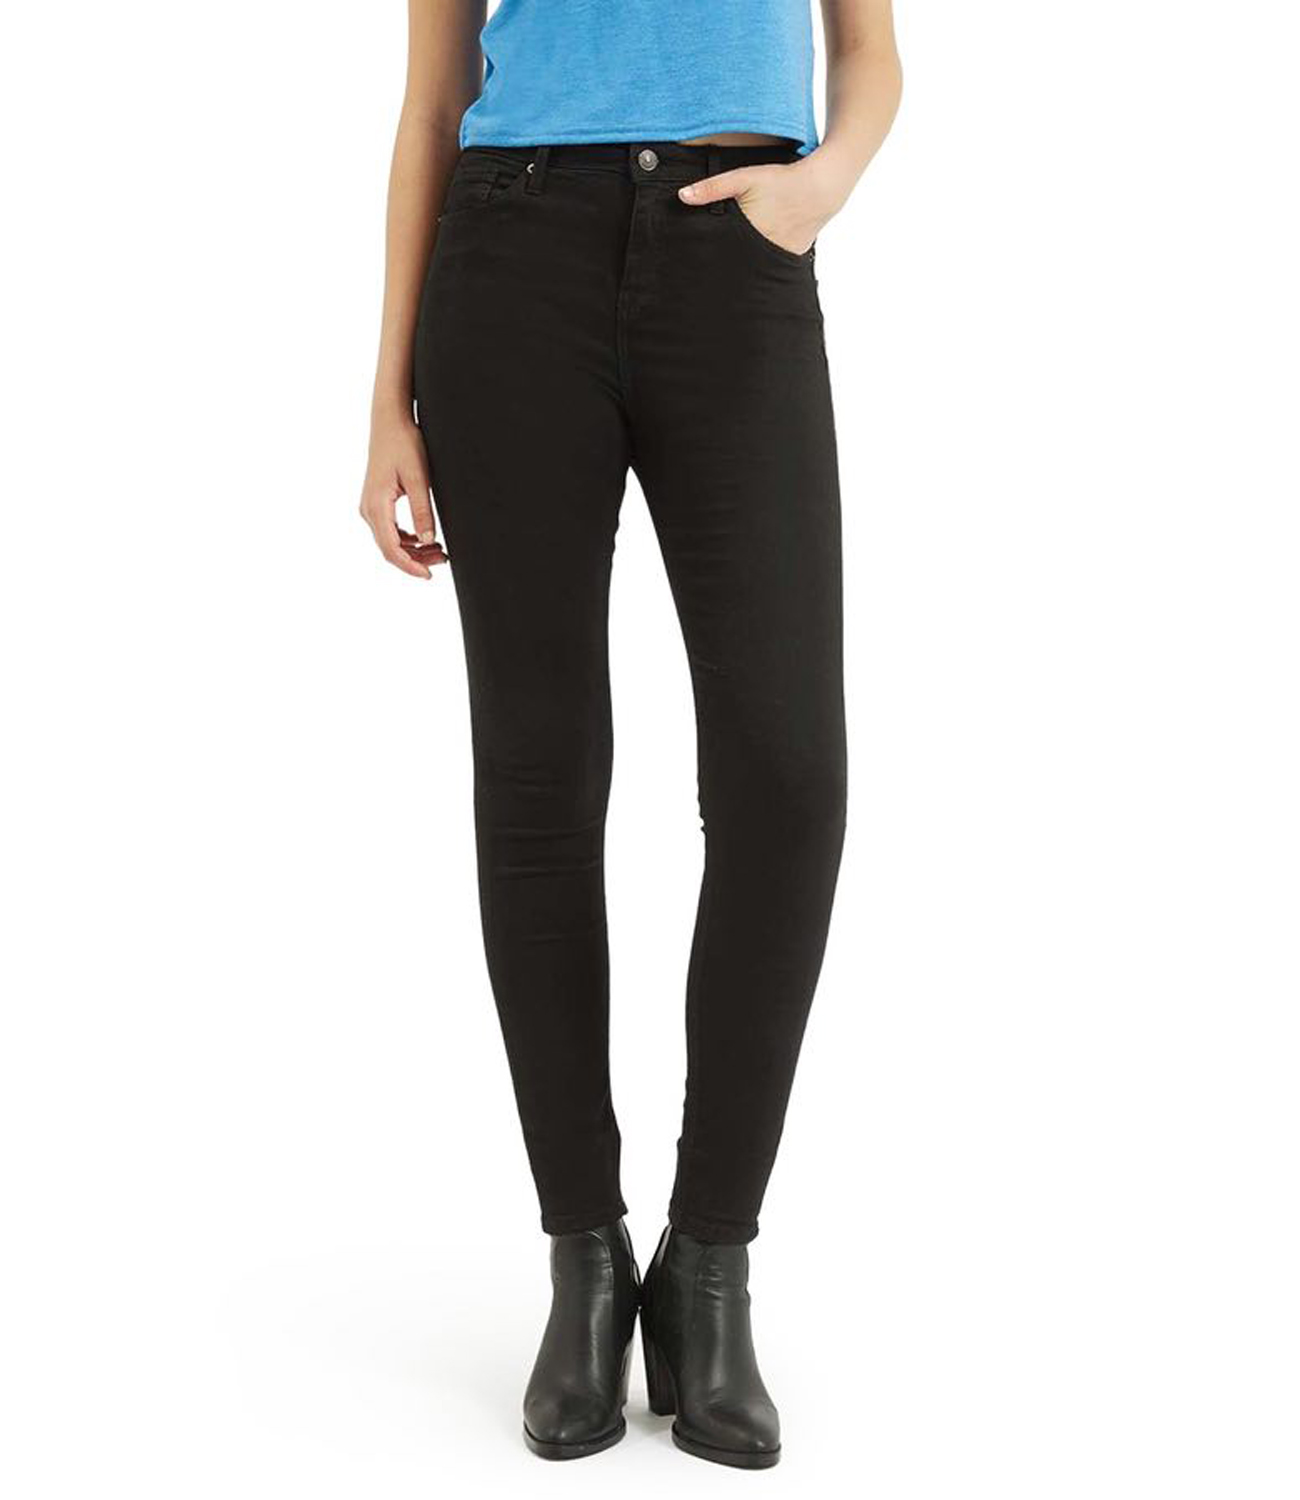 Buy Ansh Fashion Wear Women's Black Denim Jeans Online @ ₹800 from ...